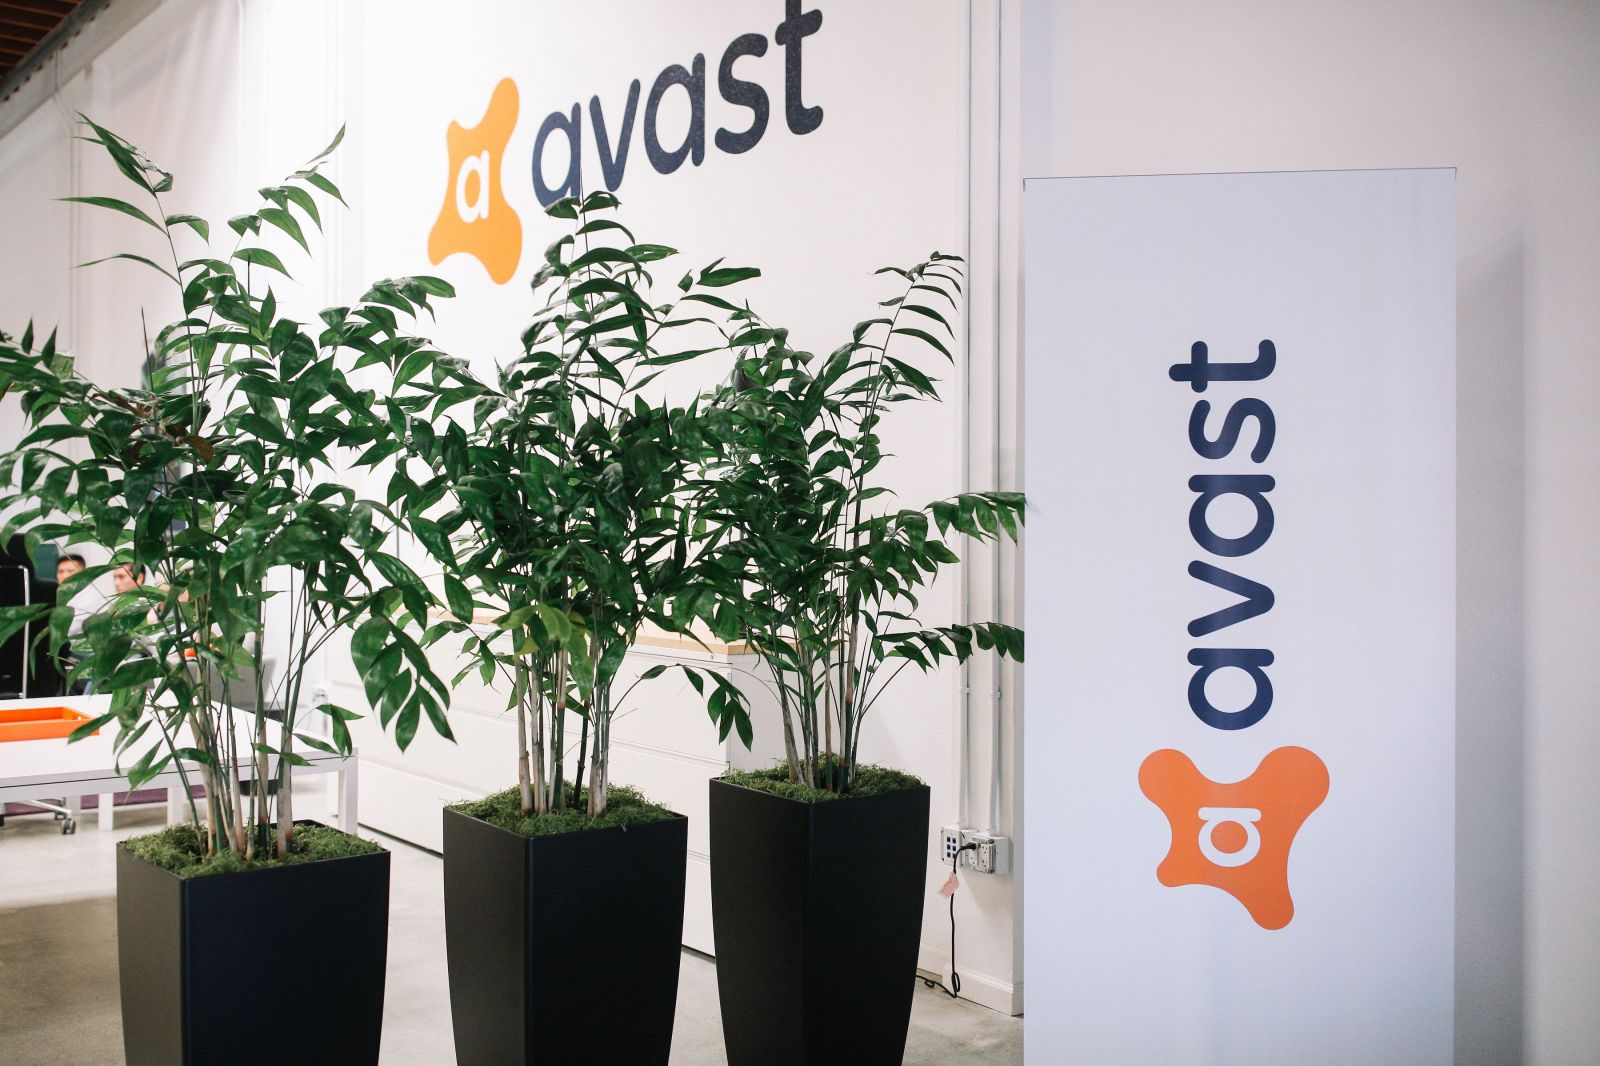 Avast daruje přes 620 milionů korun na výzkumné projekty spjaté s koronavirem. Vždy jsme chránili bezpečí lidí, říká společnost